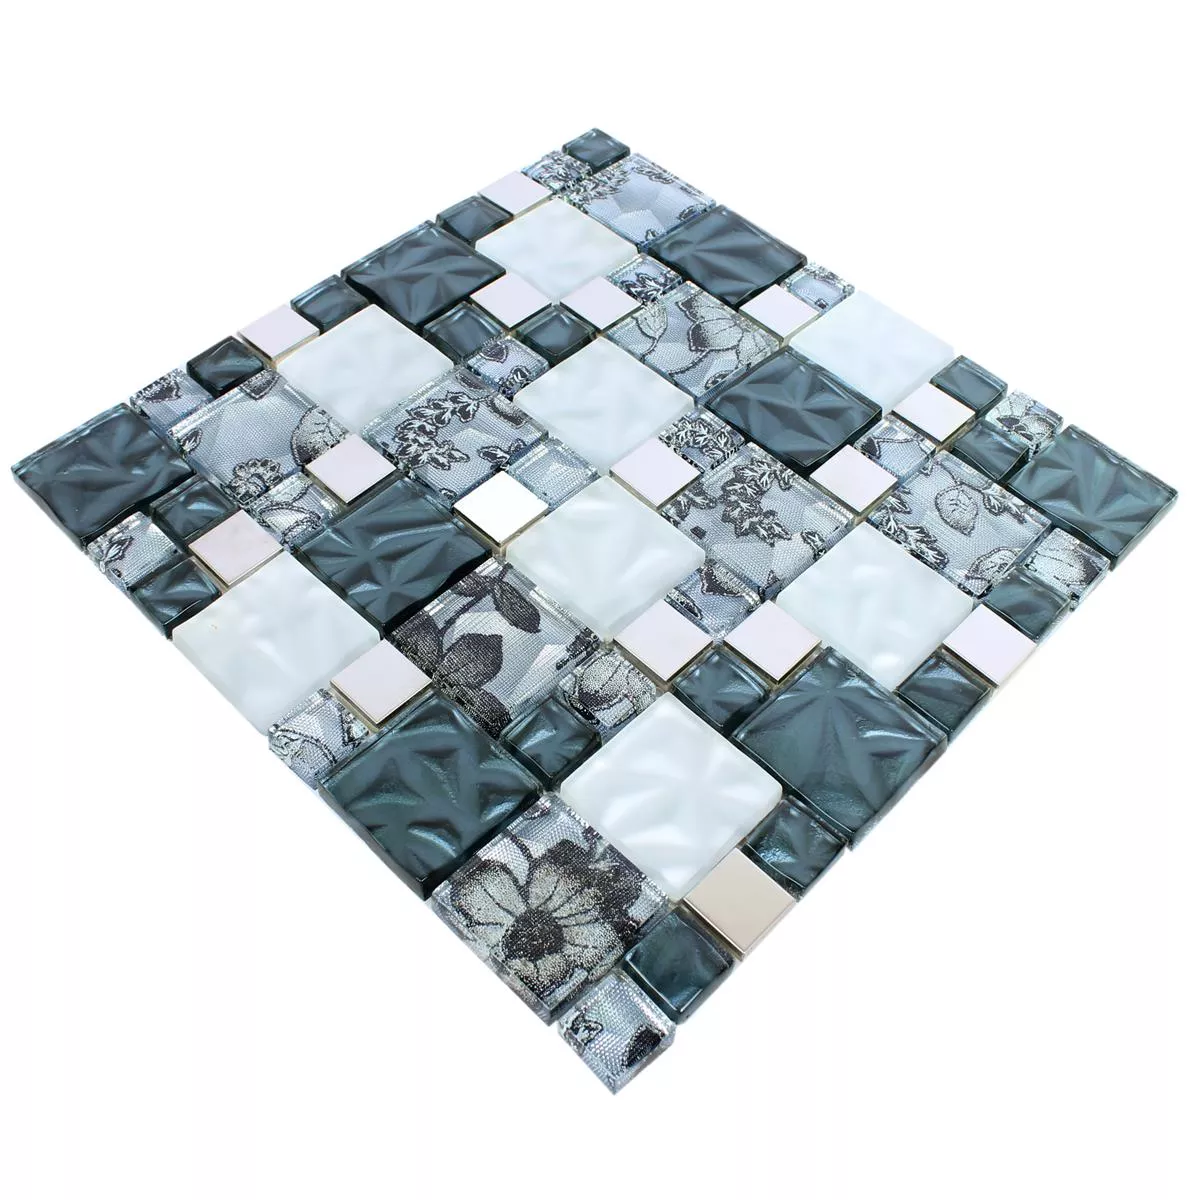 Sample Glas Metall Stainless Steel Mosaic Tiles Zadar Grey Blue